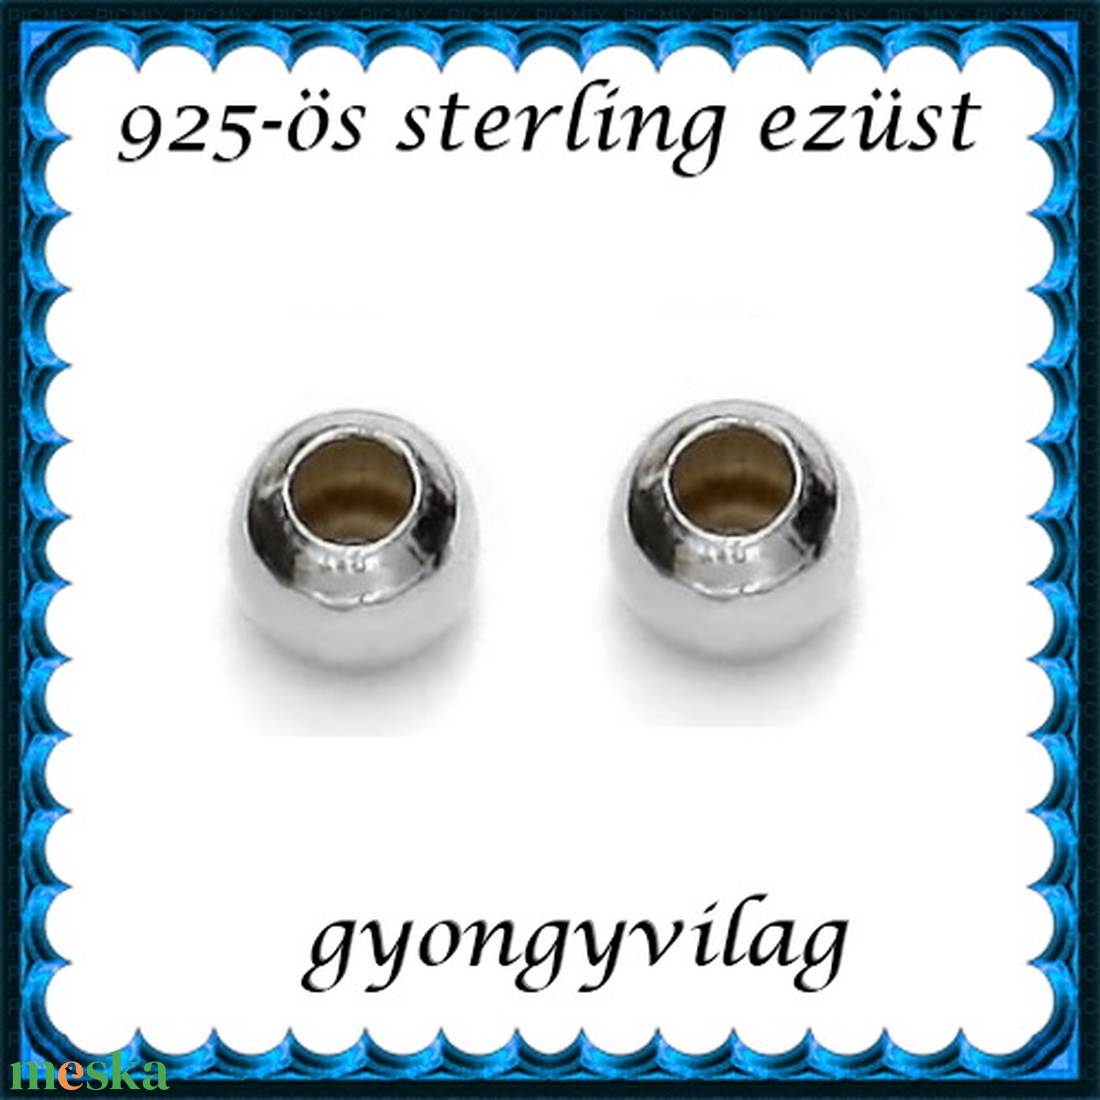 925-ös sterling ezüst ékszerkellék: köztes/gyöngy/díszitőelem EKÖ 10-5 2db/csomag - gyöngy, ékszerkellék - fém köztesek - Meska.hu